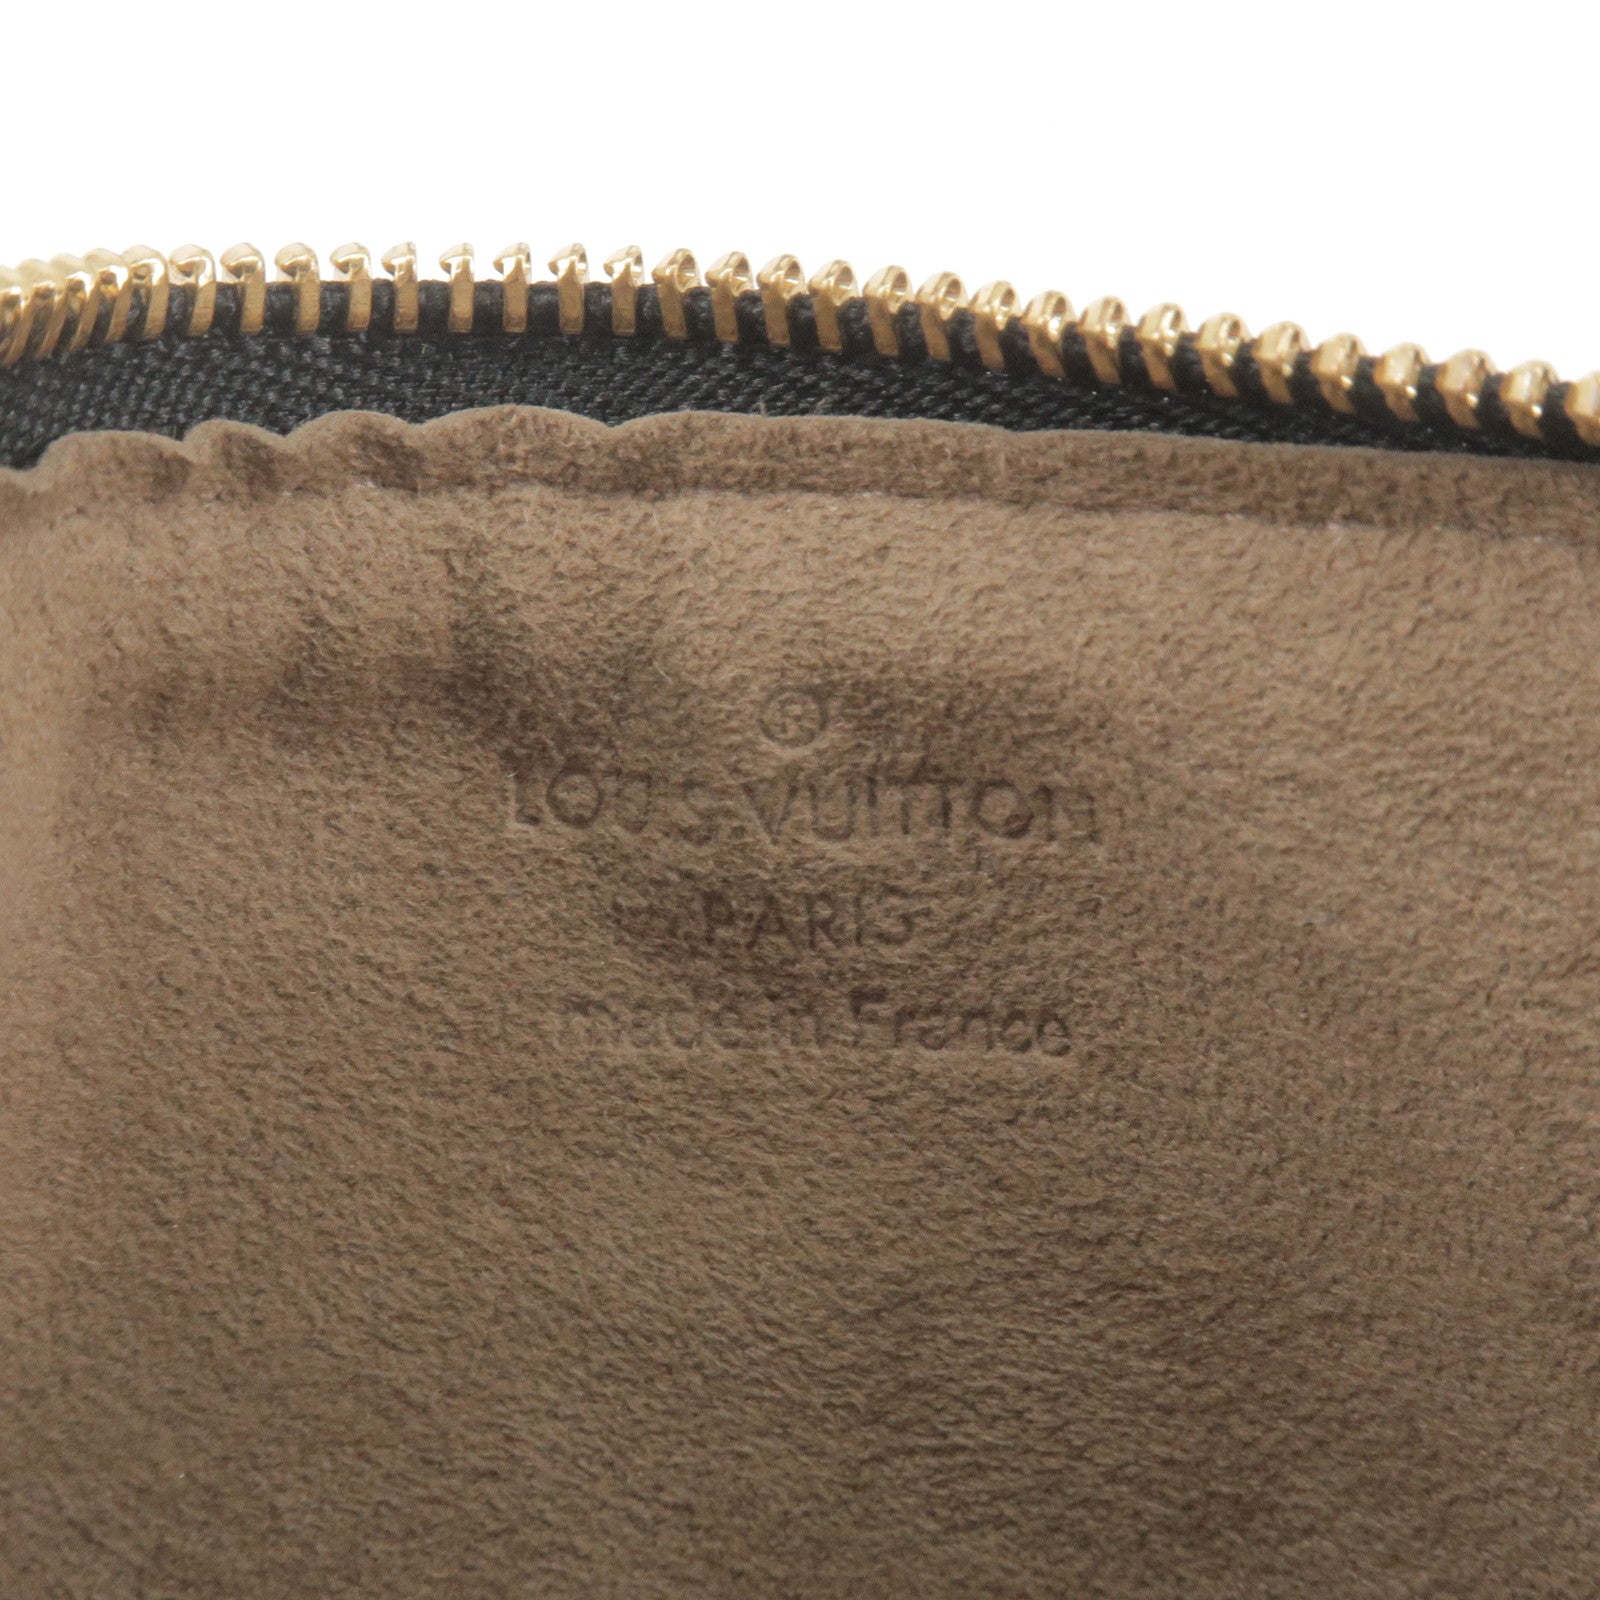 Louis-Vuitton-Monogram-Multi-Color-Pochette-MM-Noir-M60031 – dct